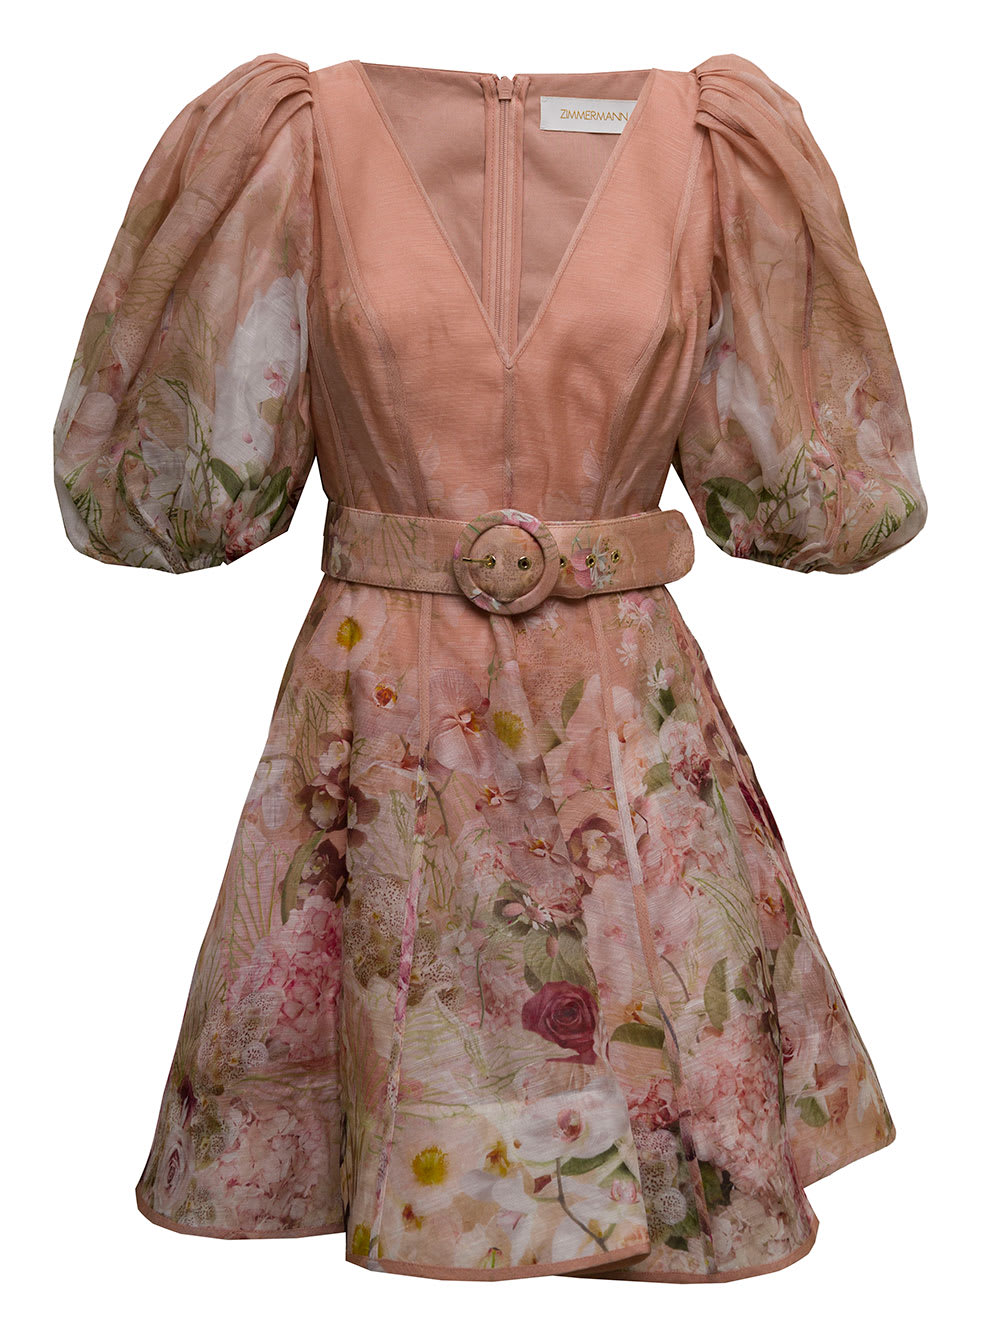 Zimmermann Womans Pinkfloral Silk Blend Dancer Dress With Belt